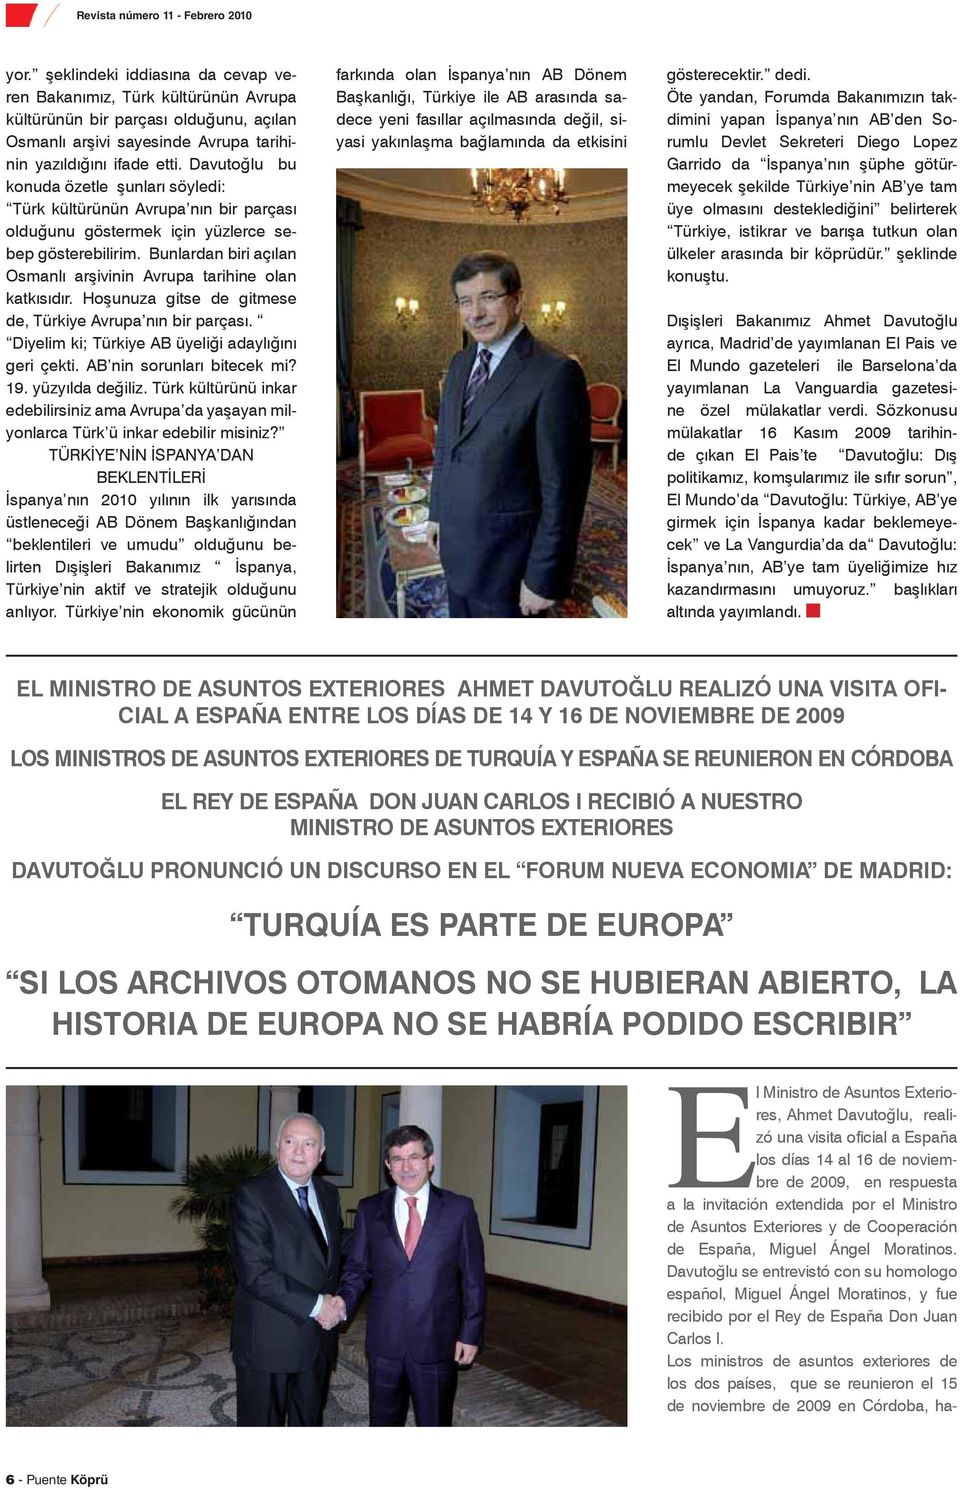 Davutoğlu se entrevistó con su homologo español, Miguel Ángel Moratinos, y fue recibido por el Rey de España Don Juan Carlos I.